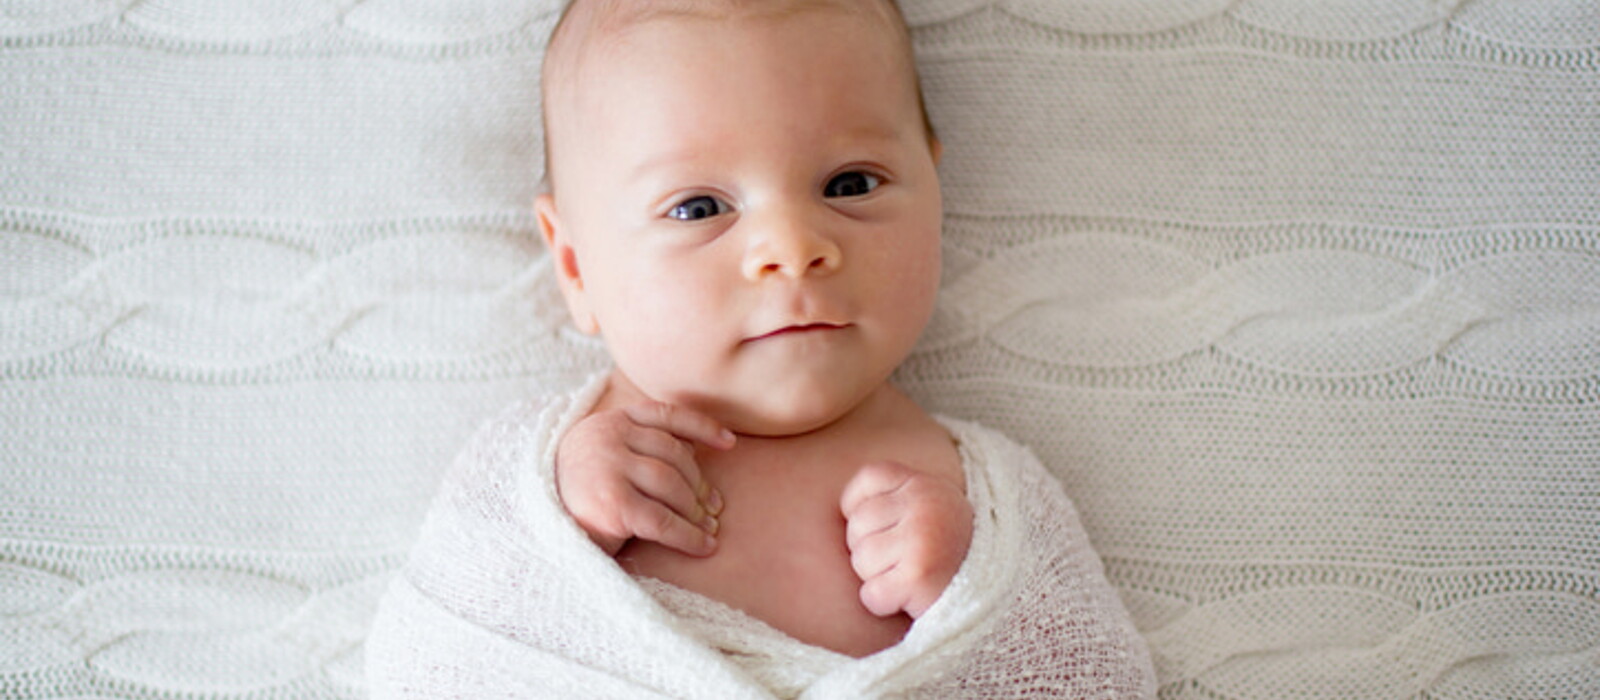 วิธีห่อตัวทารก การห่อตัวทารกให้ลูกสบายตัว คล้ายอยู่ในท้องแม่